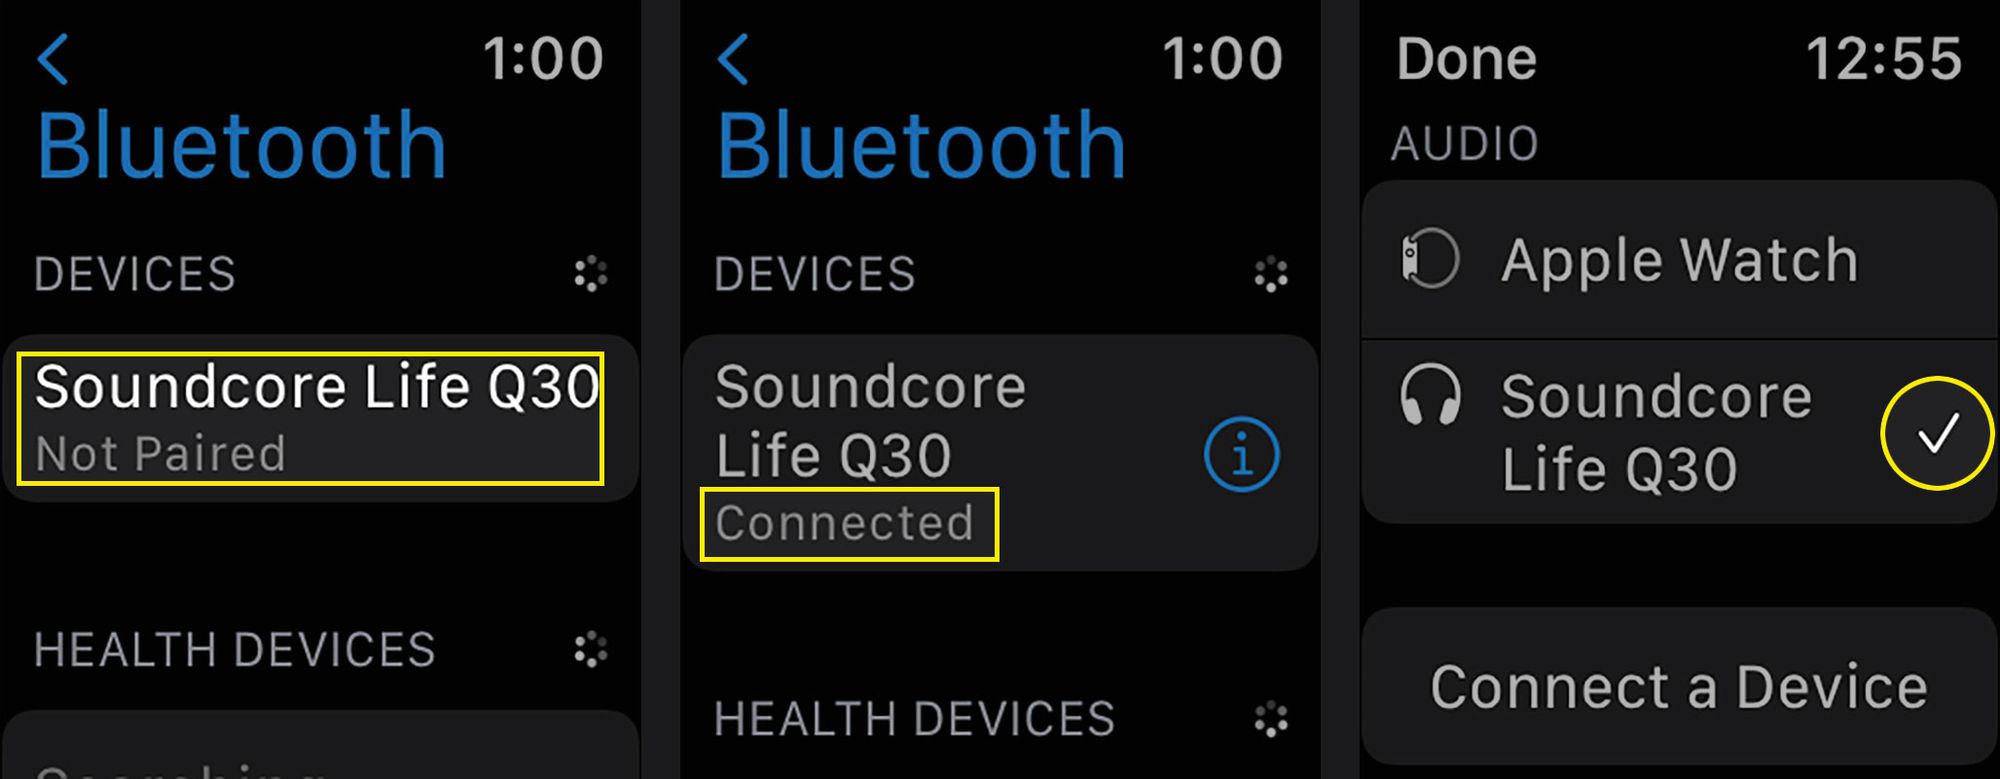 Spárování sady sluchátek Bluetooth a vytvoření aktivního zvukového výstupu na Apple Watch